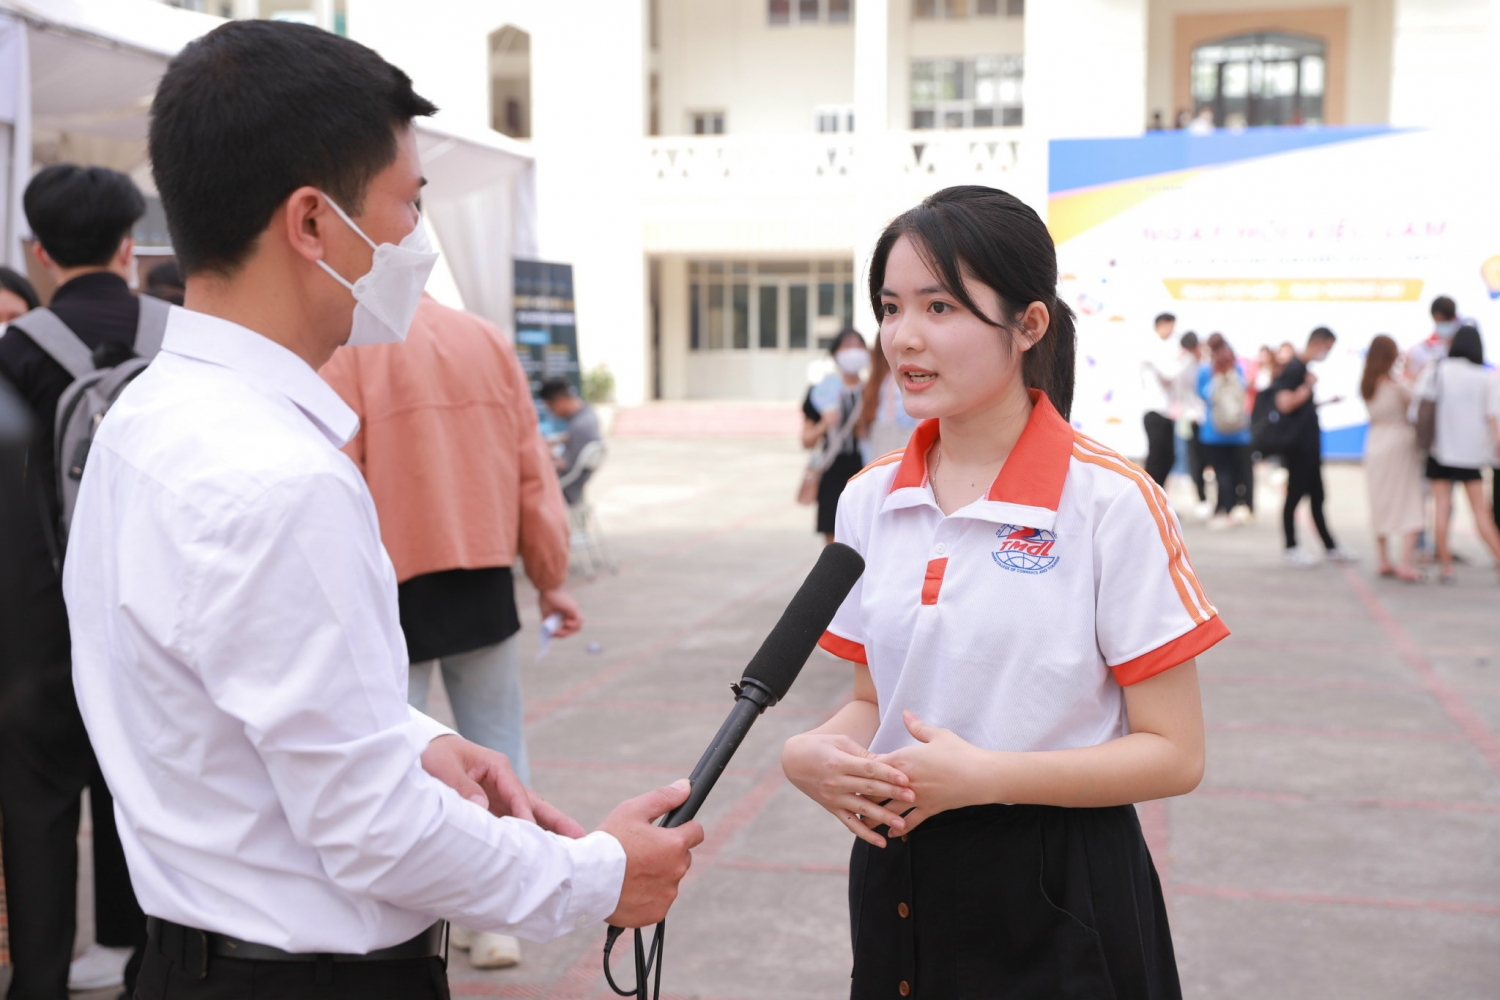 Hàng nghìn vị trí tuyển dụng cho sinh viên Trường Cao đẳng Thương mại và Du lịch Hà Nội